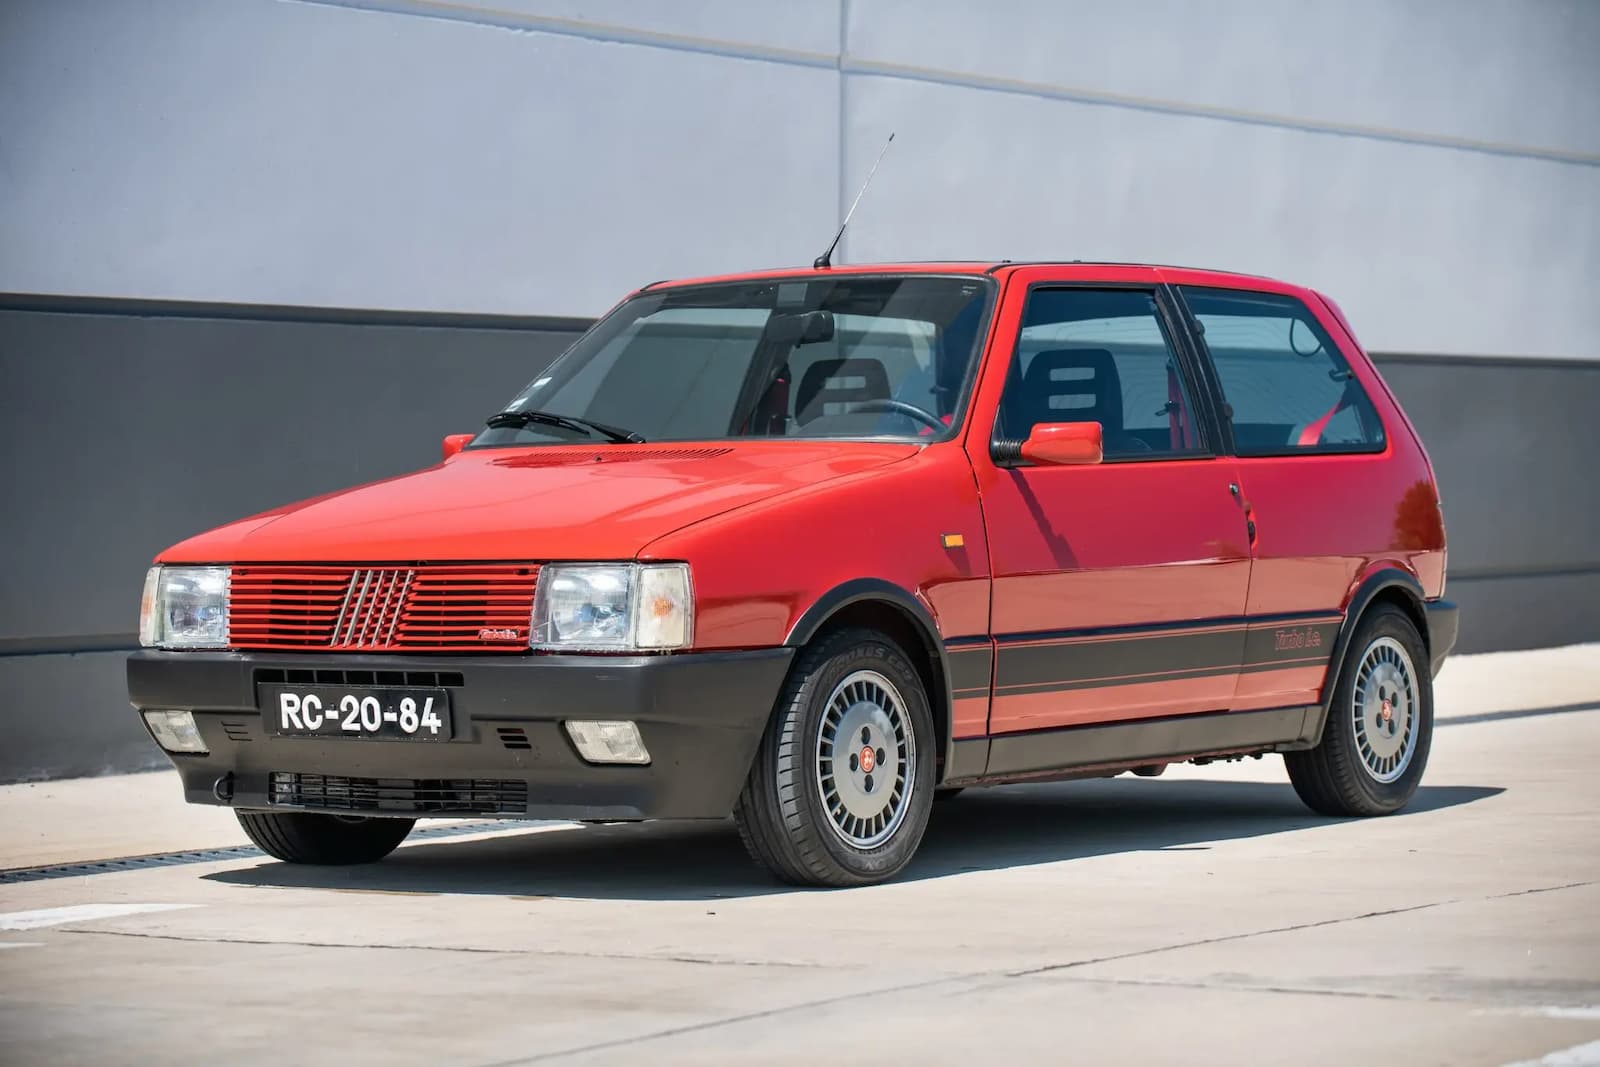 Fiat Uno Turbo